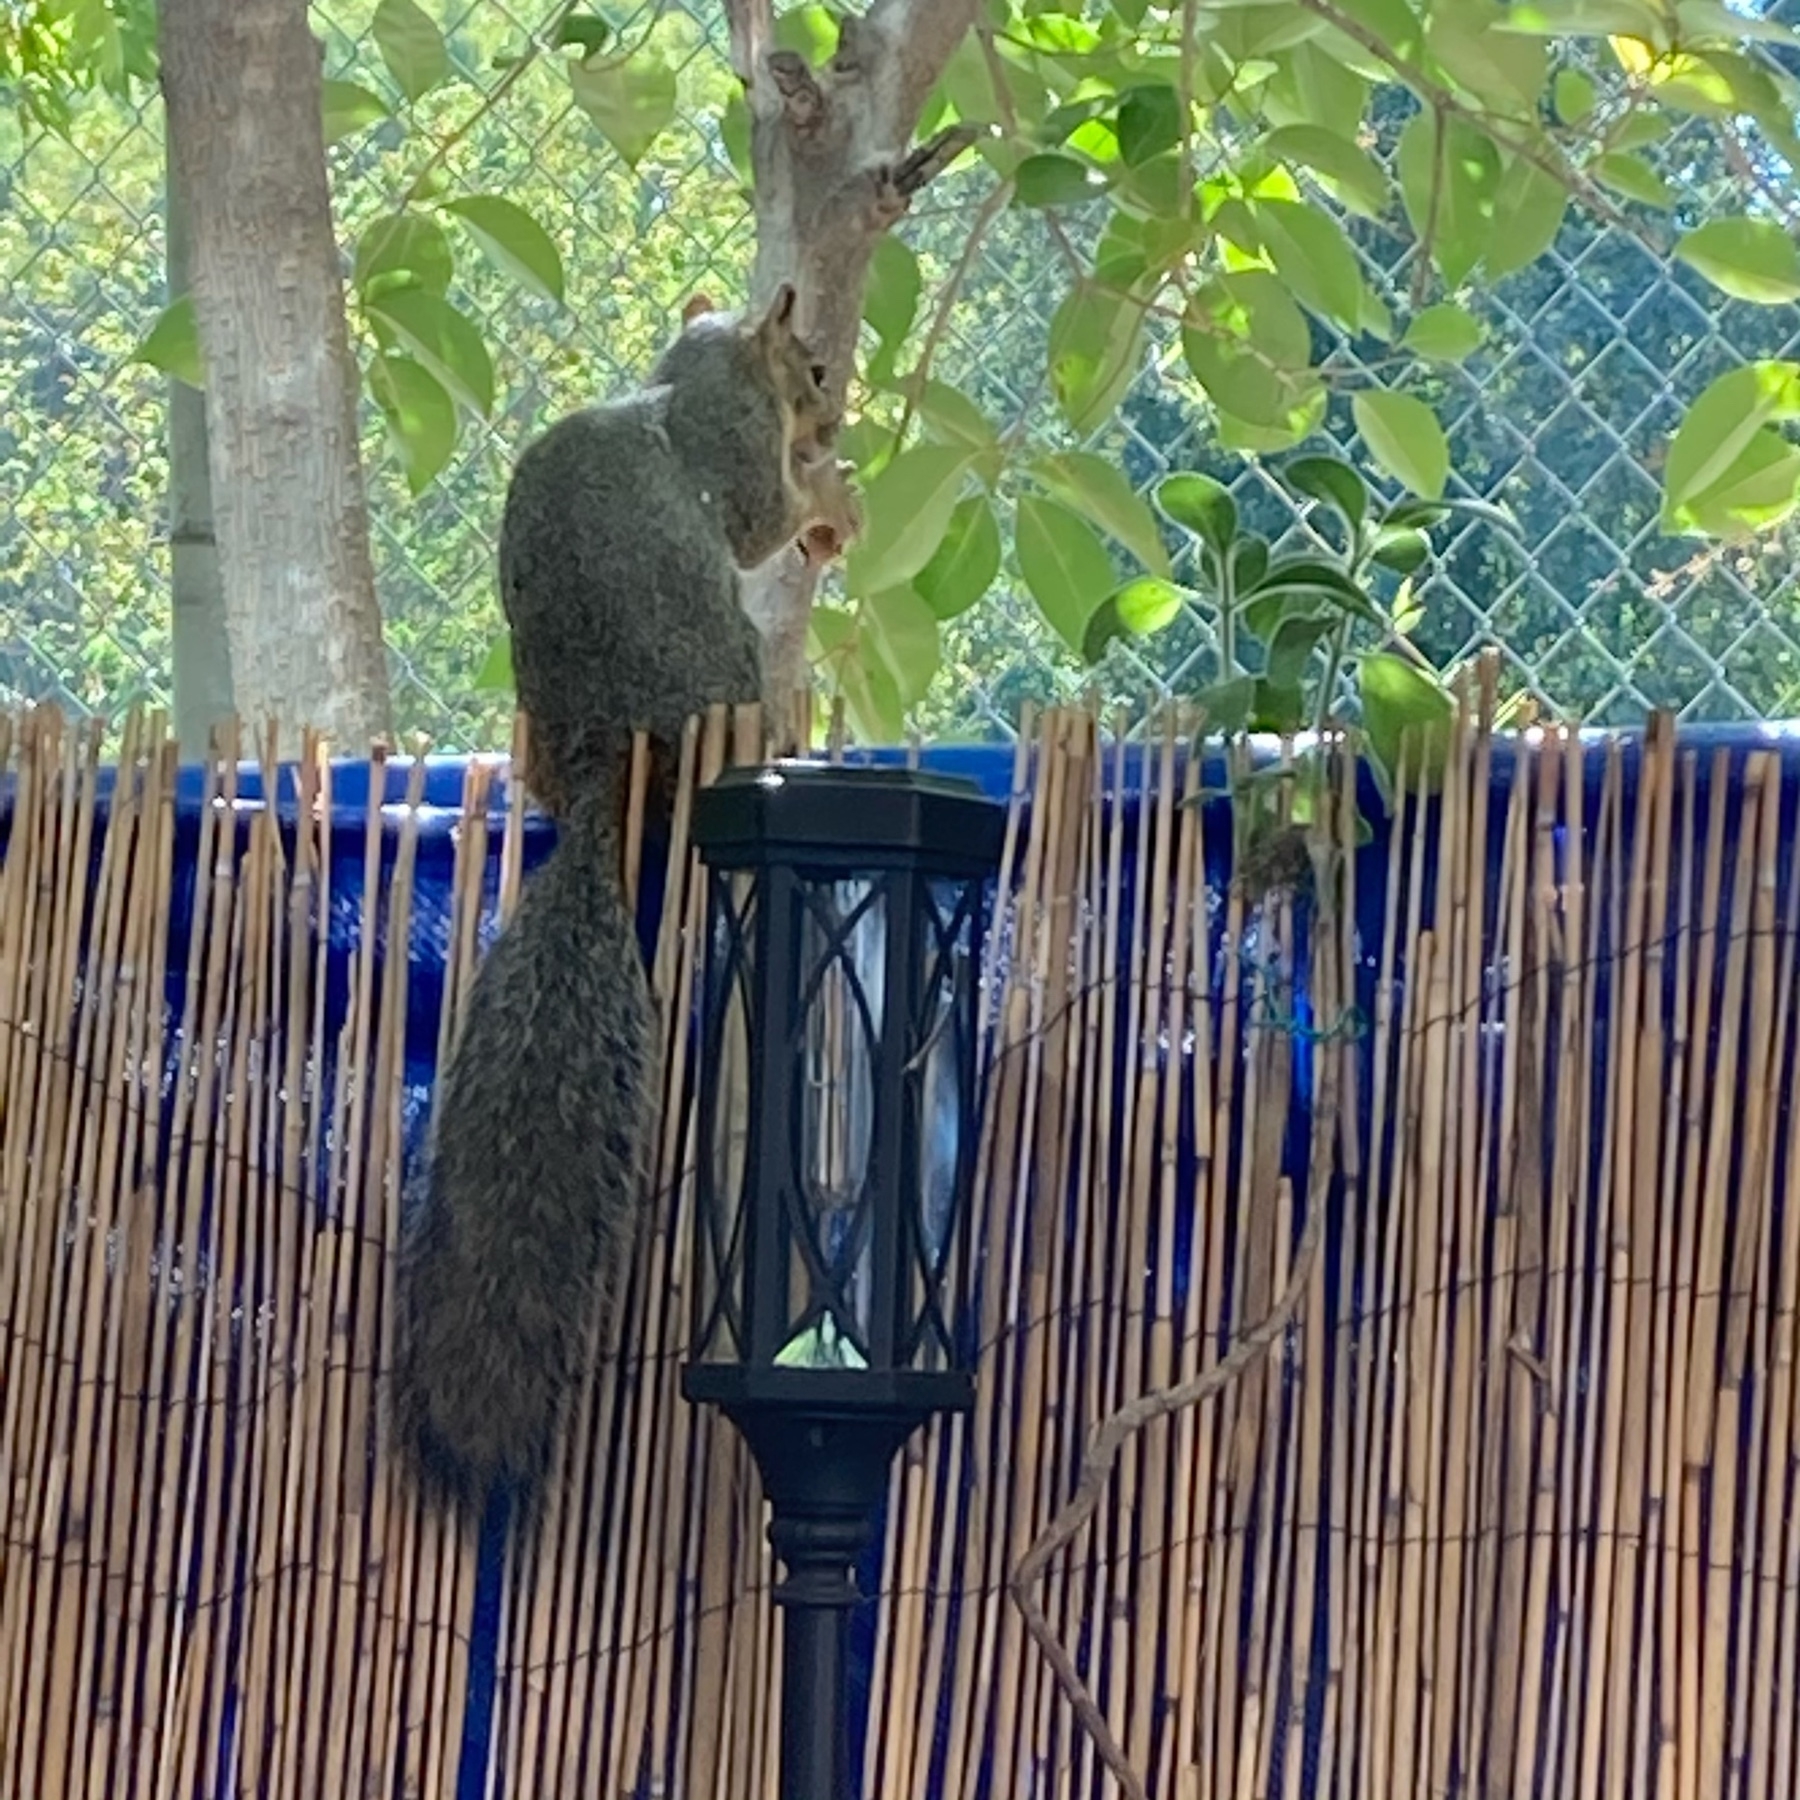 A squirrels eating a peanut. 